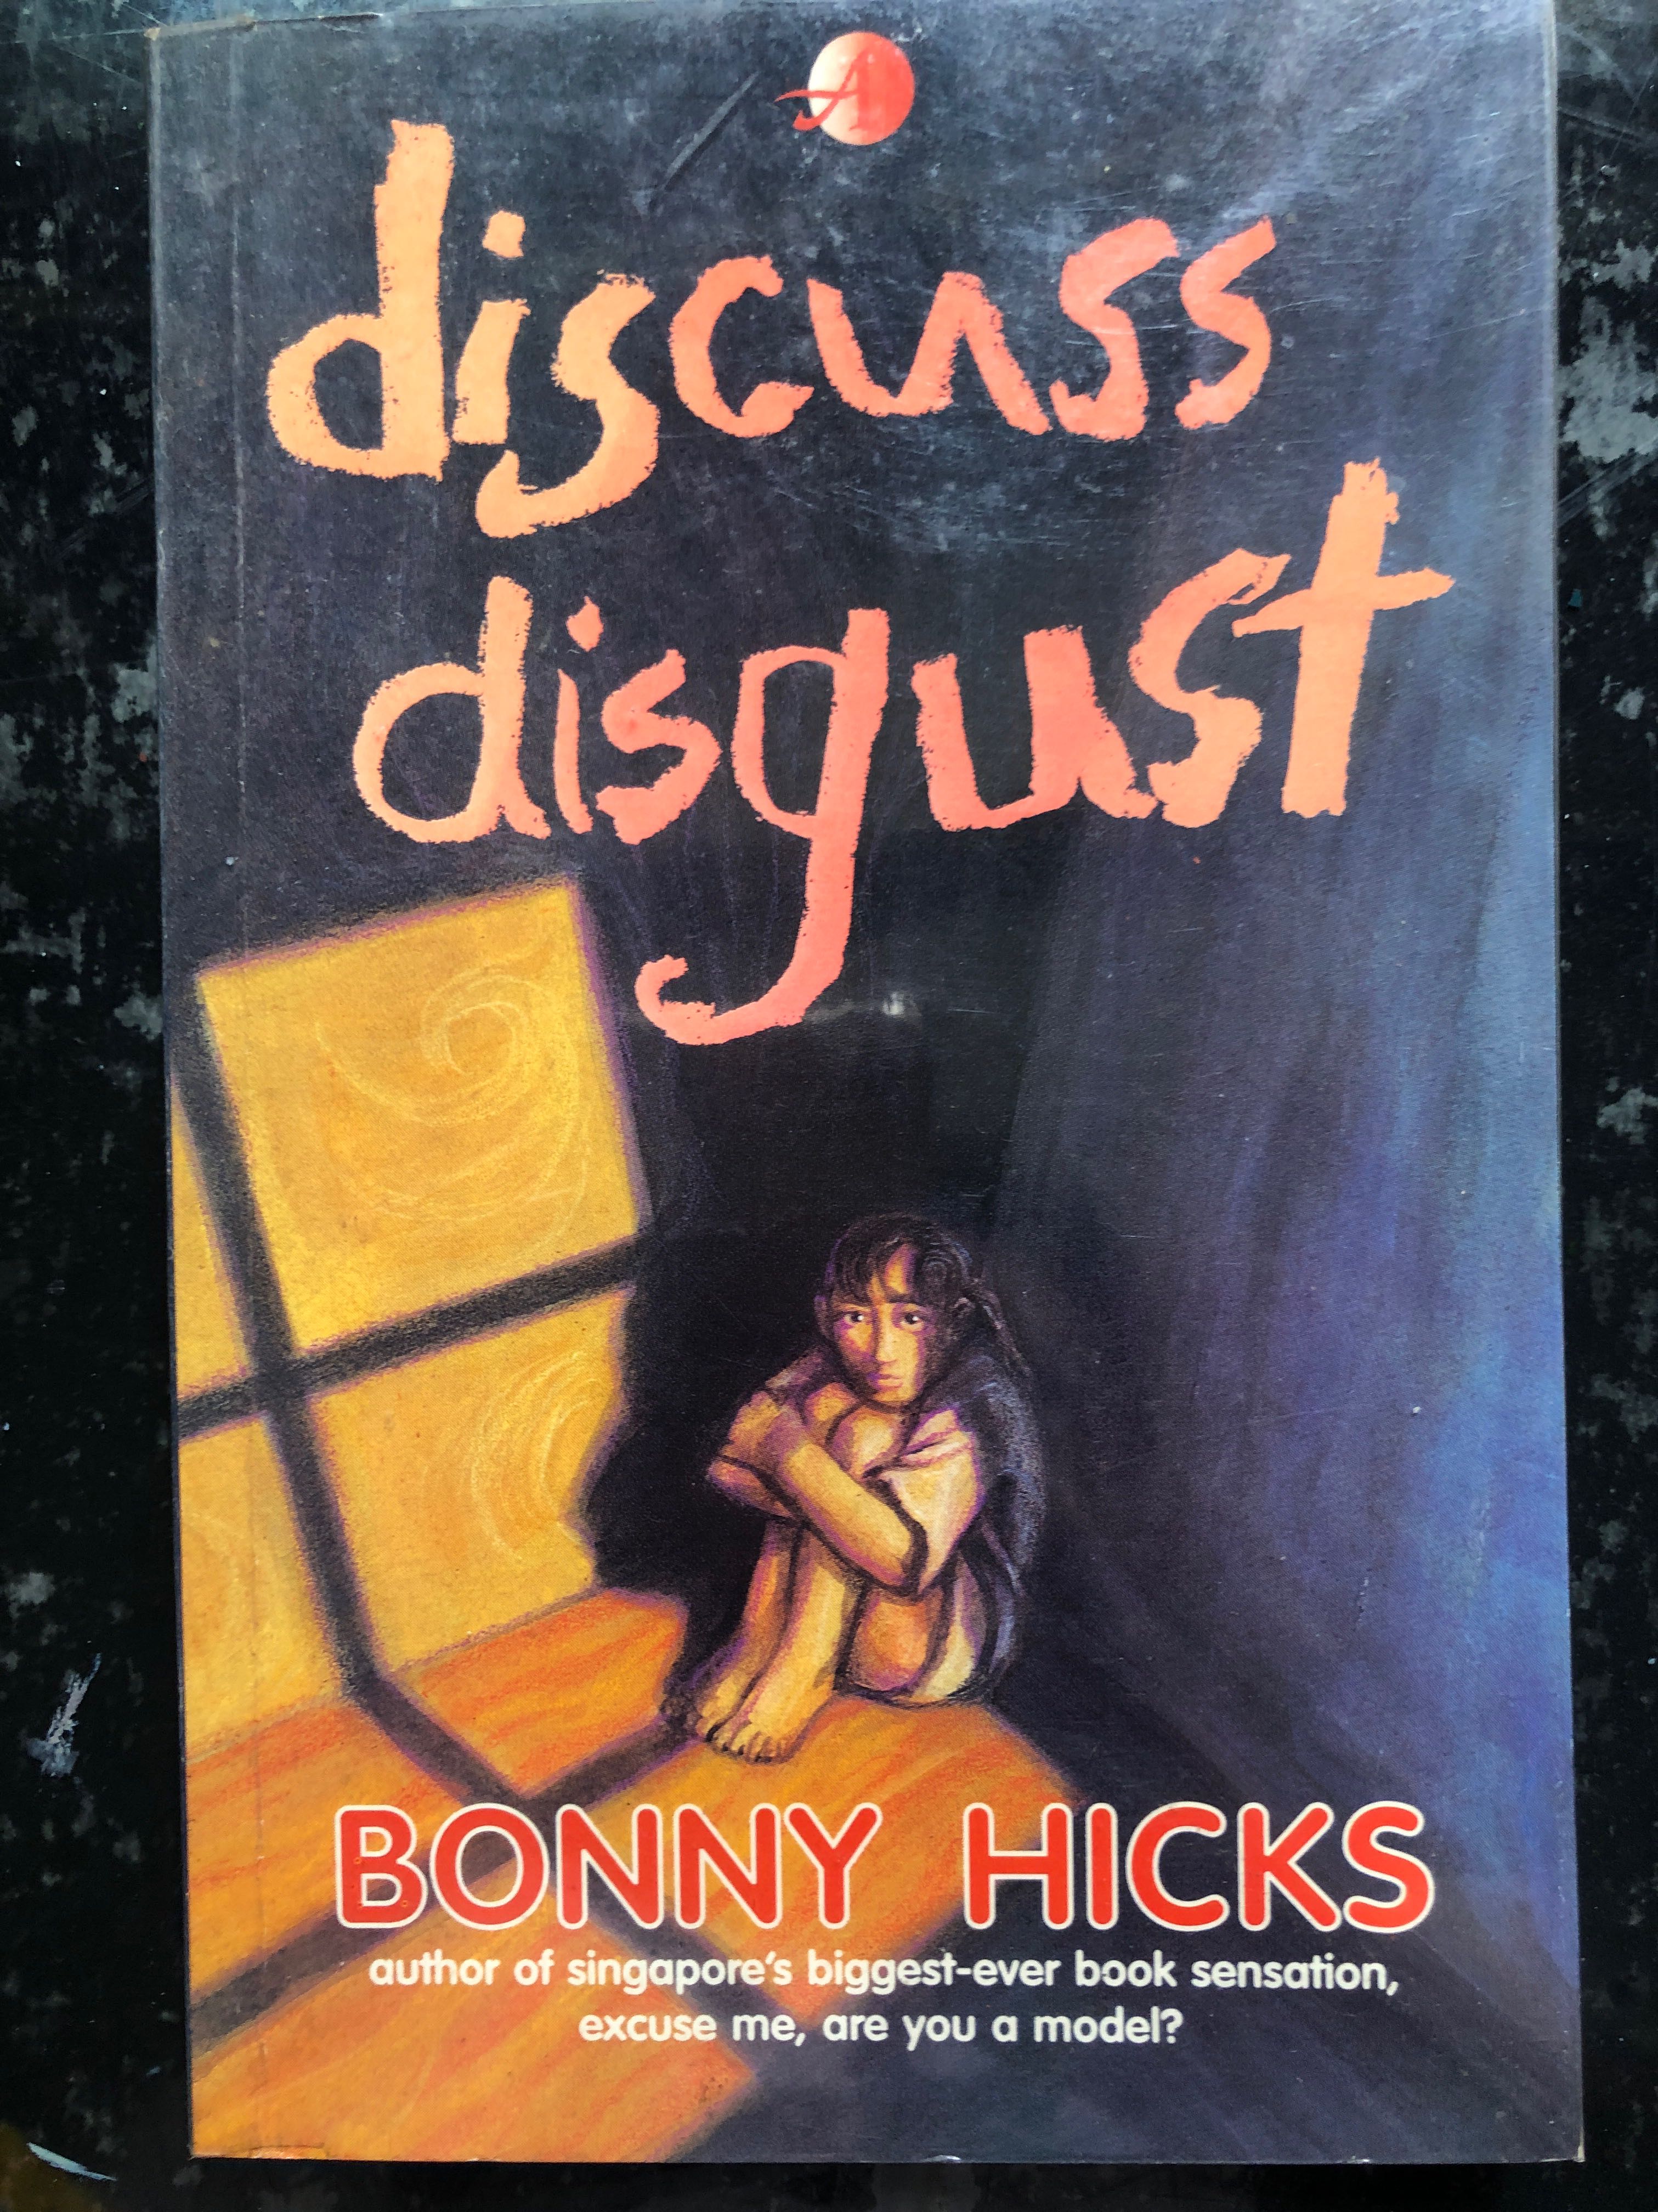 discuss_disgust_by_bonny_hicks_1615180457_712d5f19.jpg